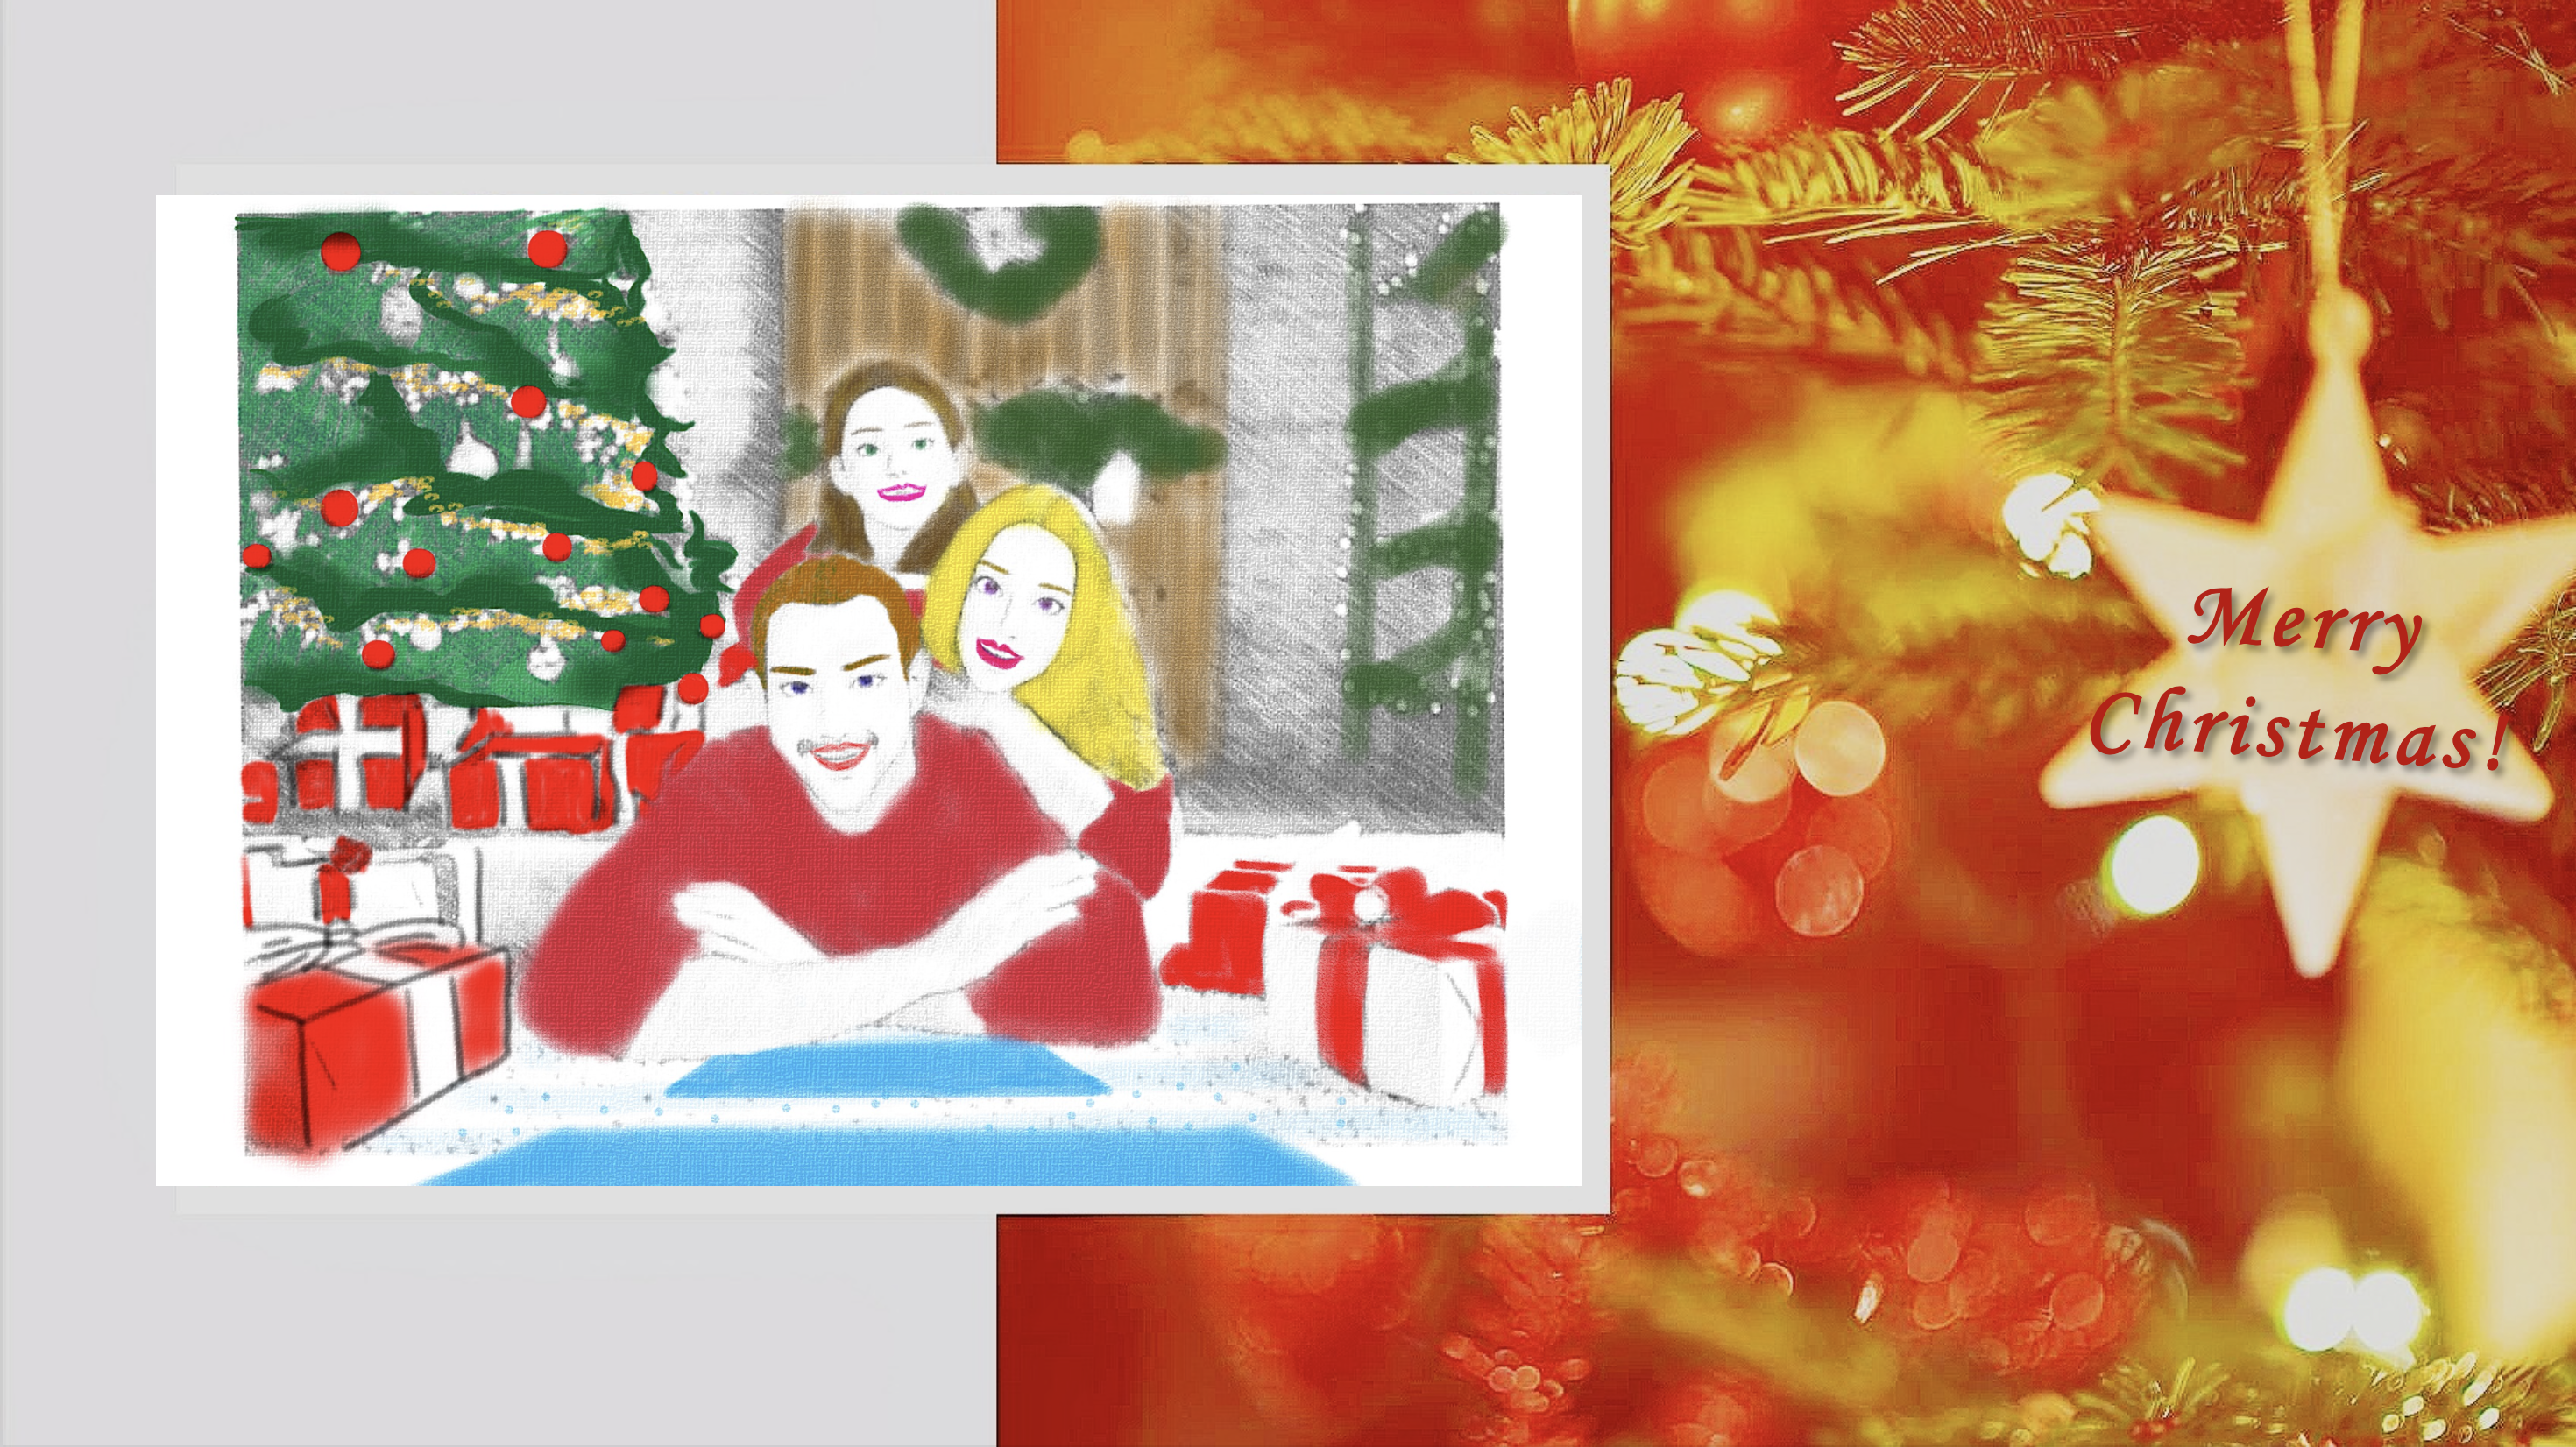 Christmas e-card designed by EOSA